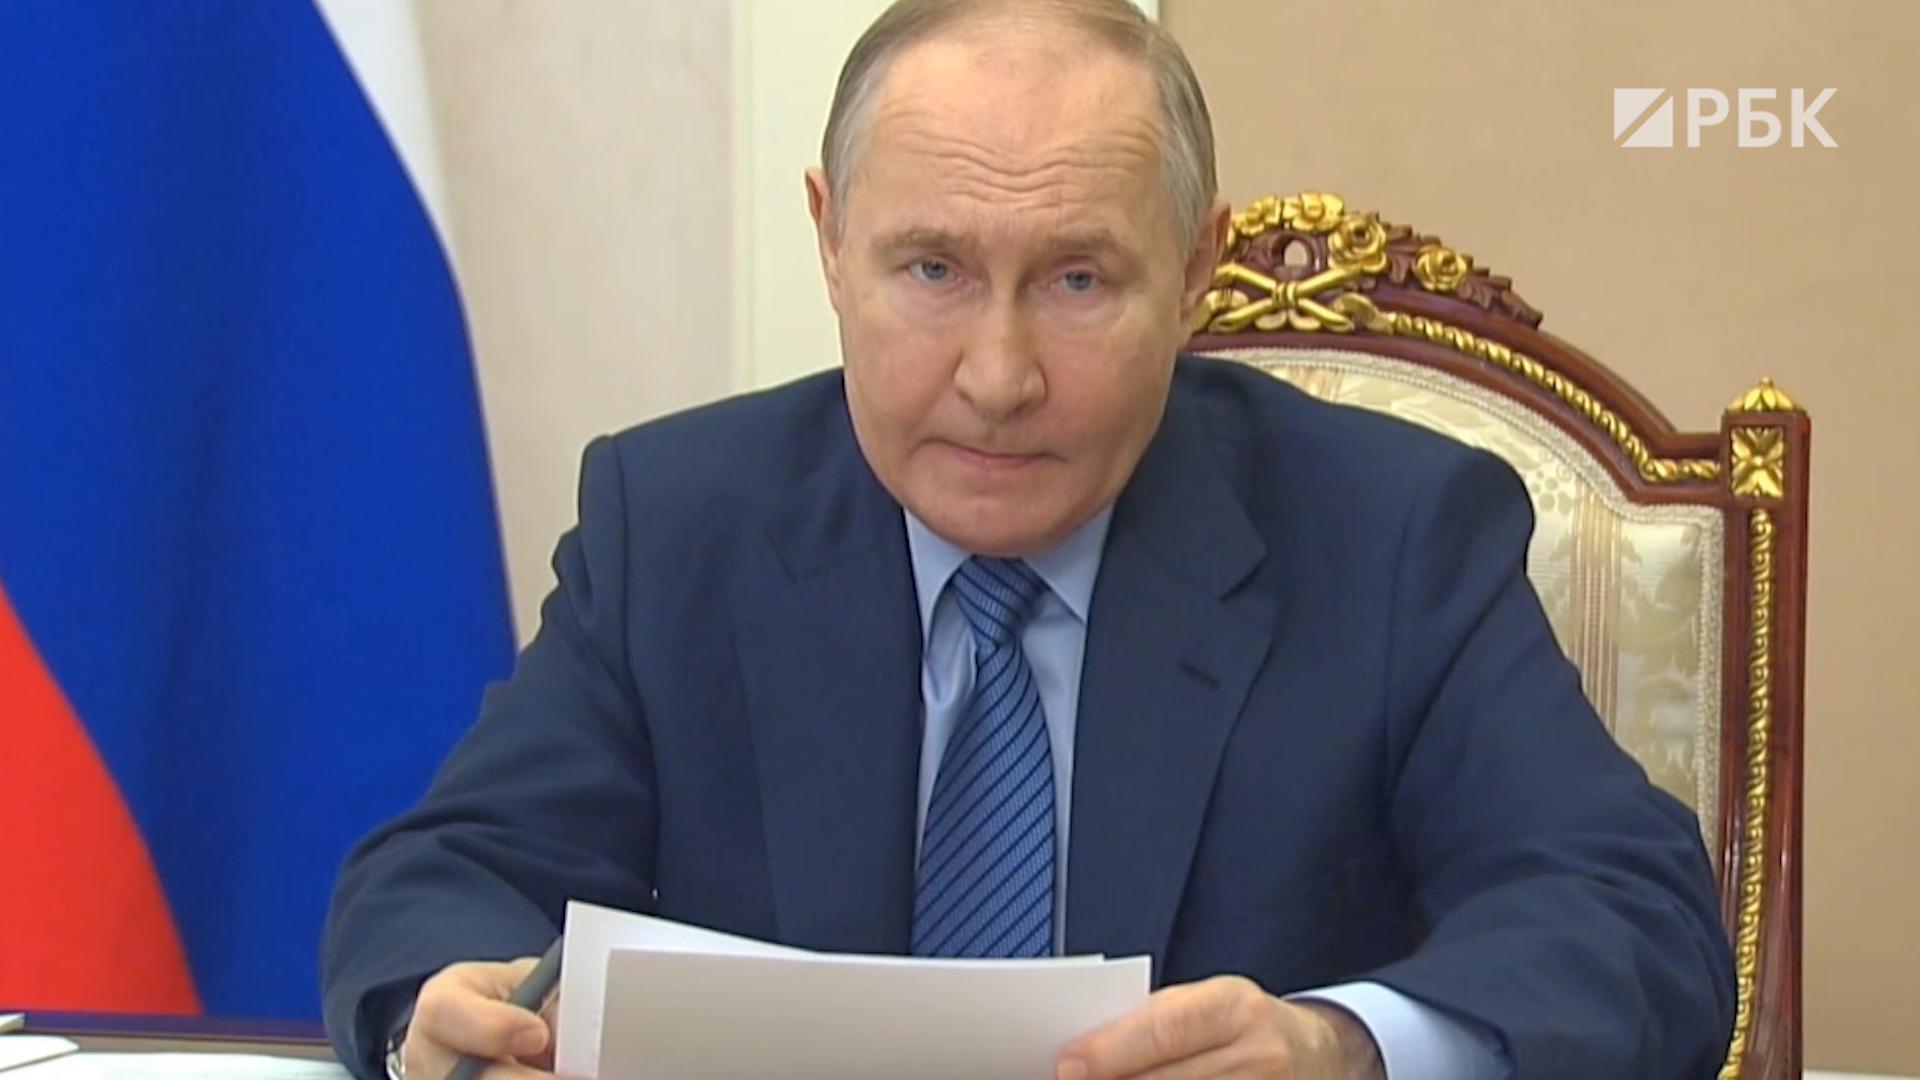 Че так мало-то: кадры с критикой Путина в адрес министра МЧС